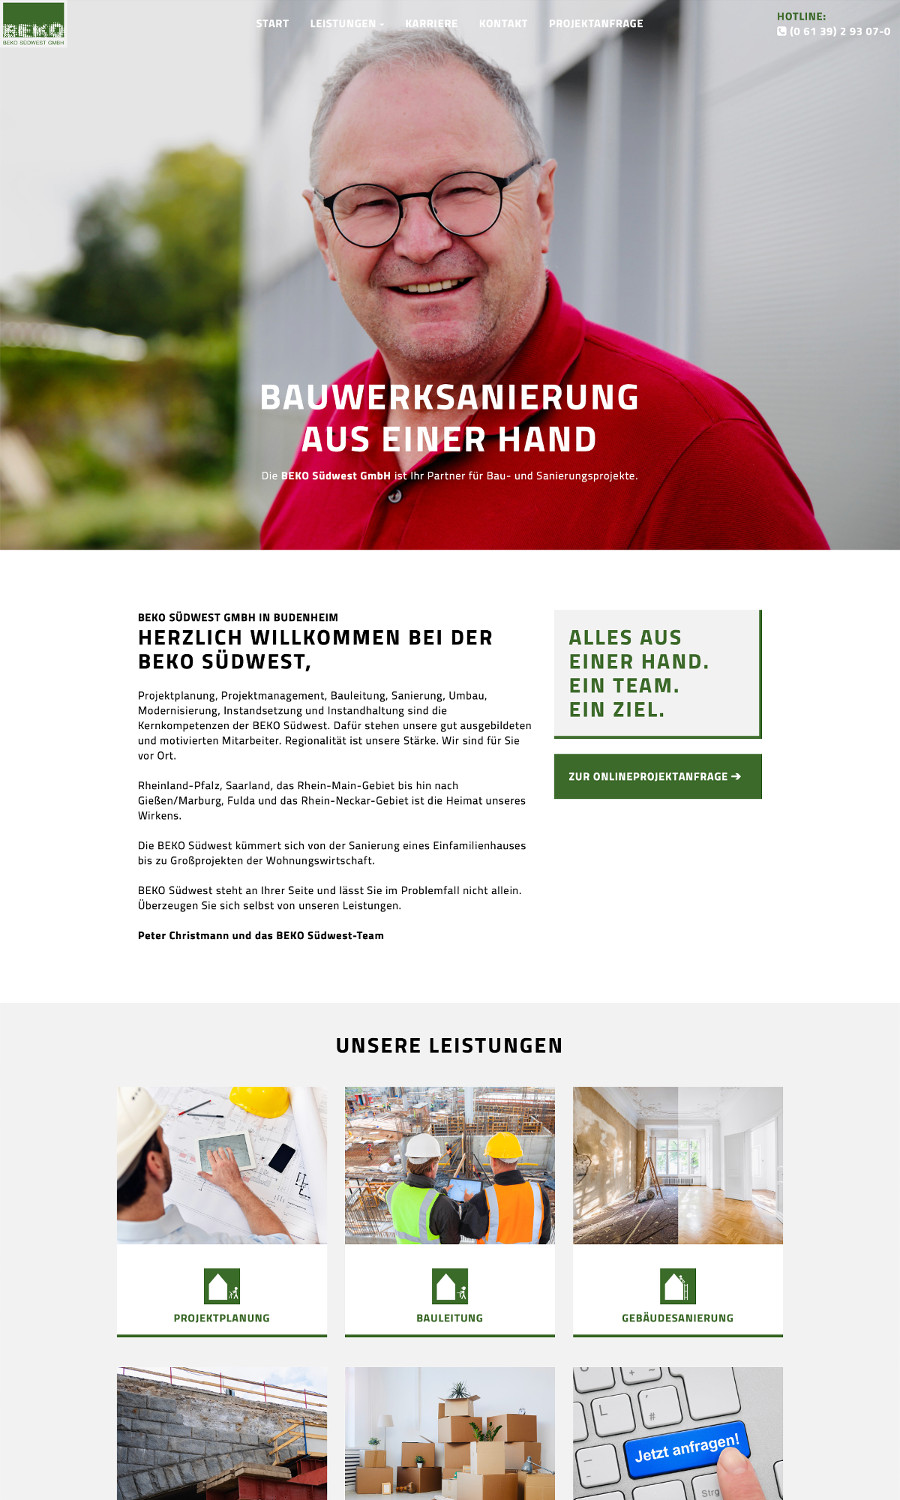 Referenz: BEKO Südwest GmbH - Bau und Sanierung in Budenheim